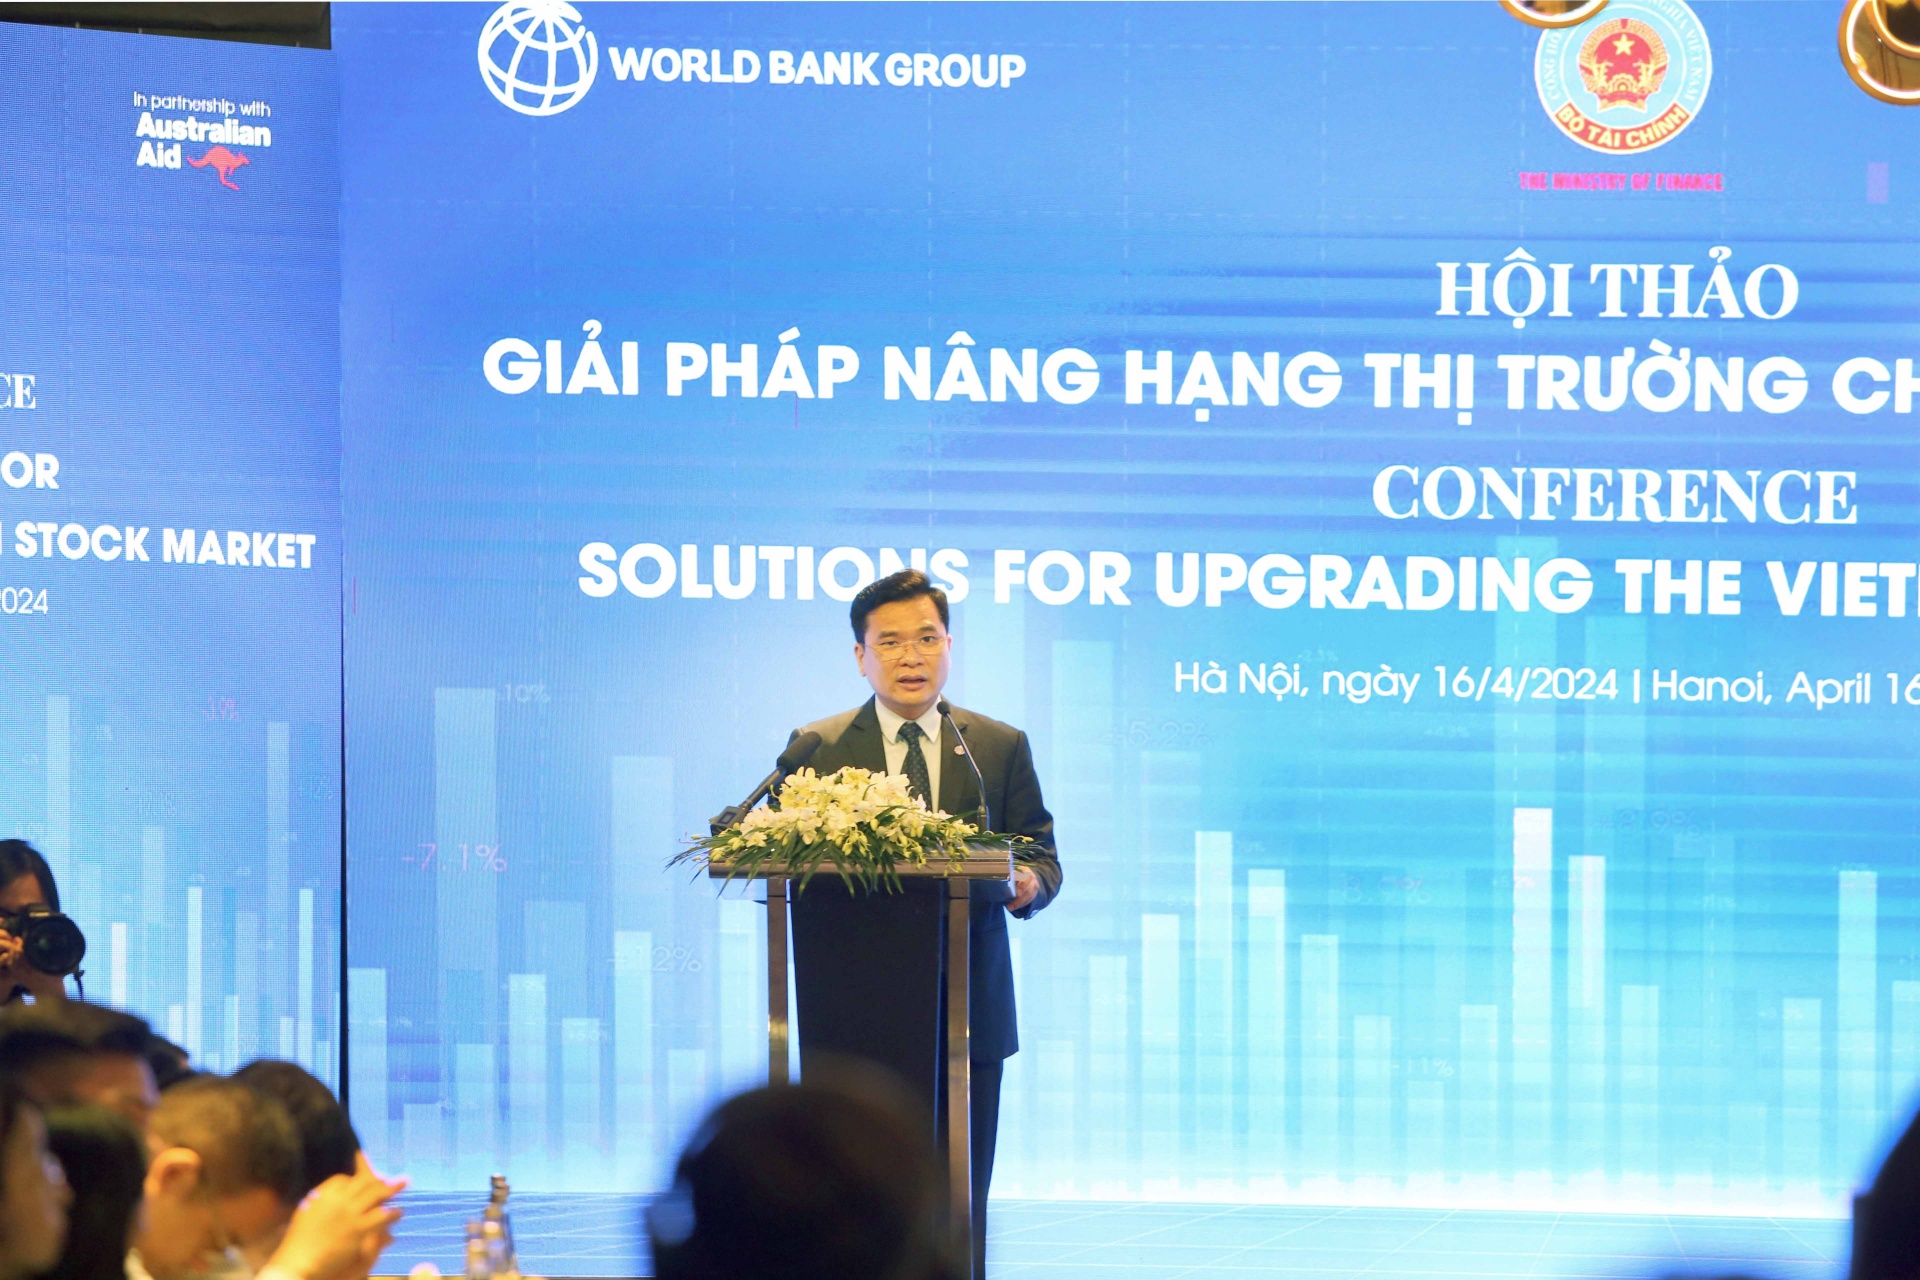 vietnams road to emerging market status